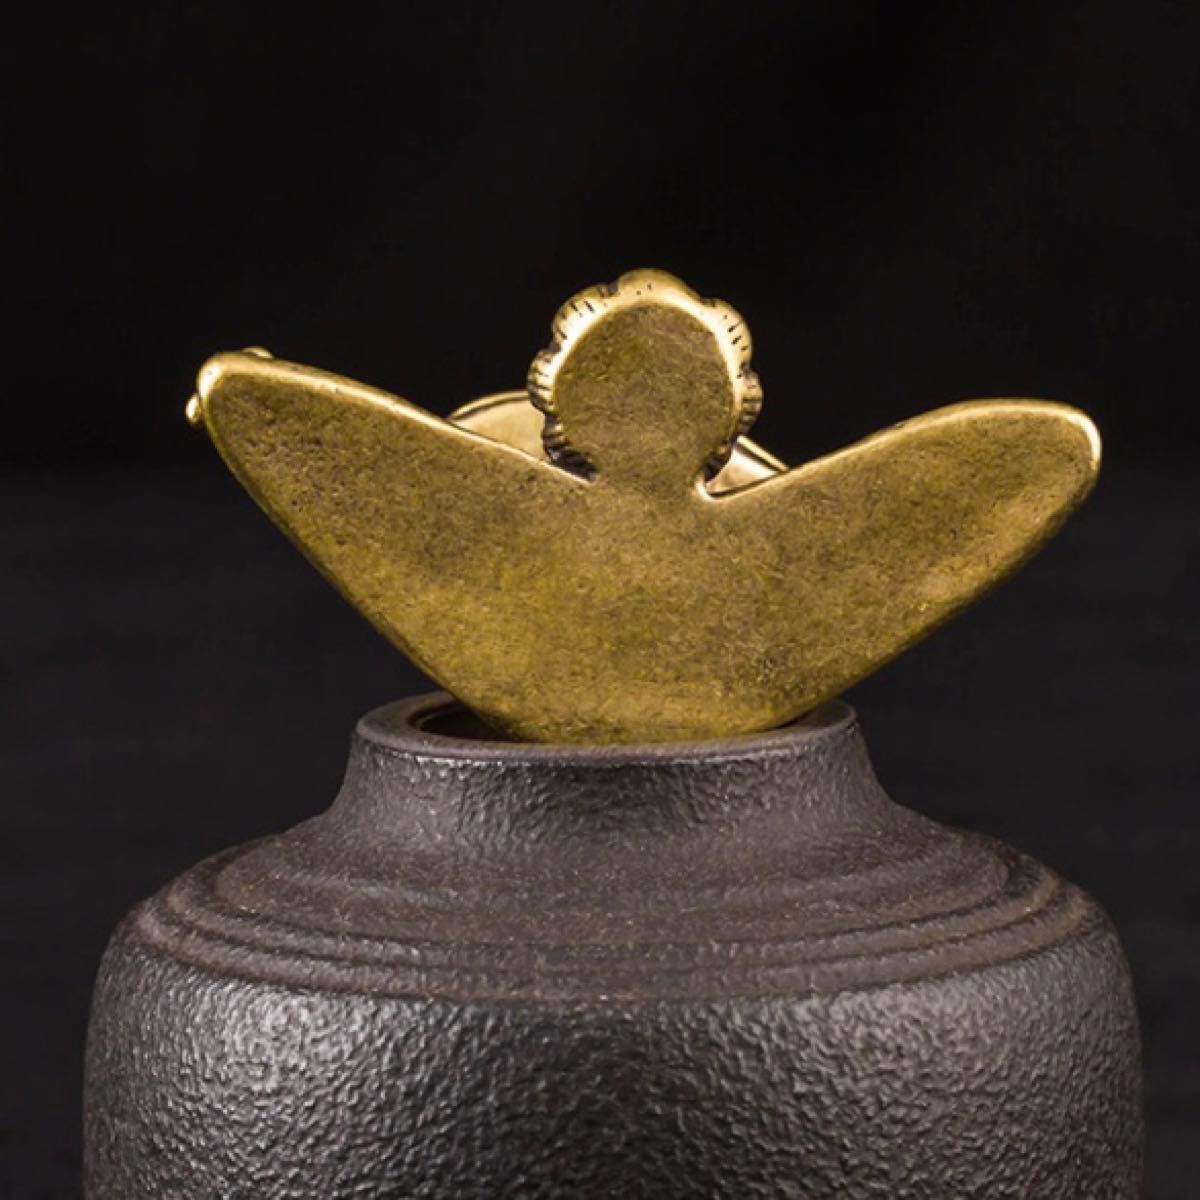 カエル かえる 蛙 お香 線香 お香立て 運気アップ 運気上昇 風水 占い 縁起物 アンティーク ビン テージ 真鍮 黄銅